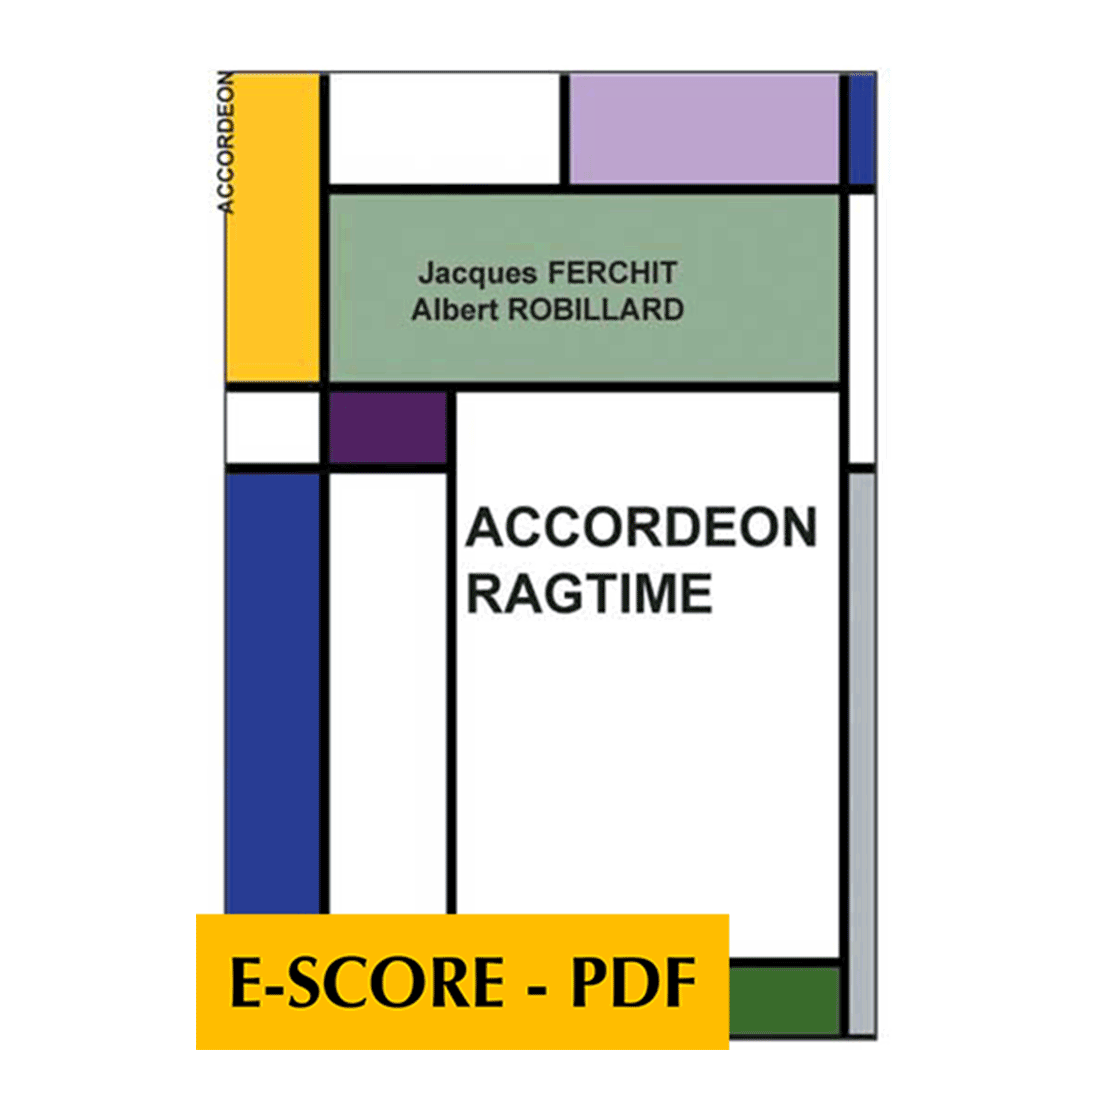 Akkordeon ragtime - E-score PDF